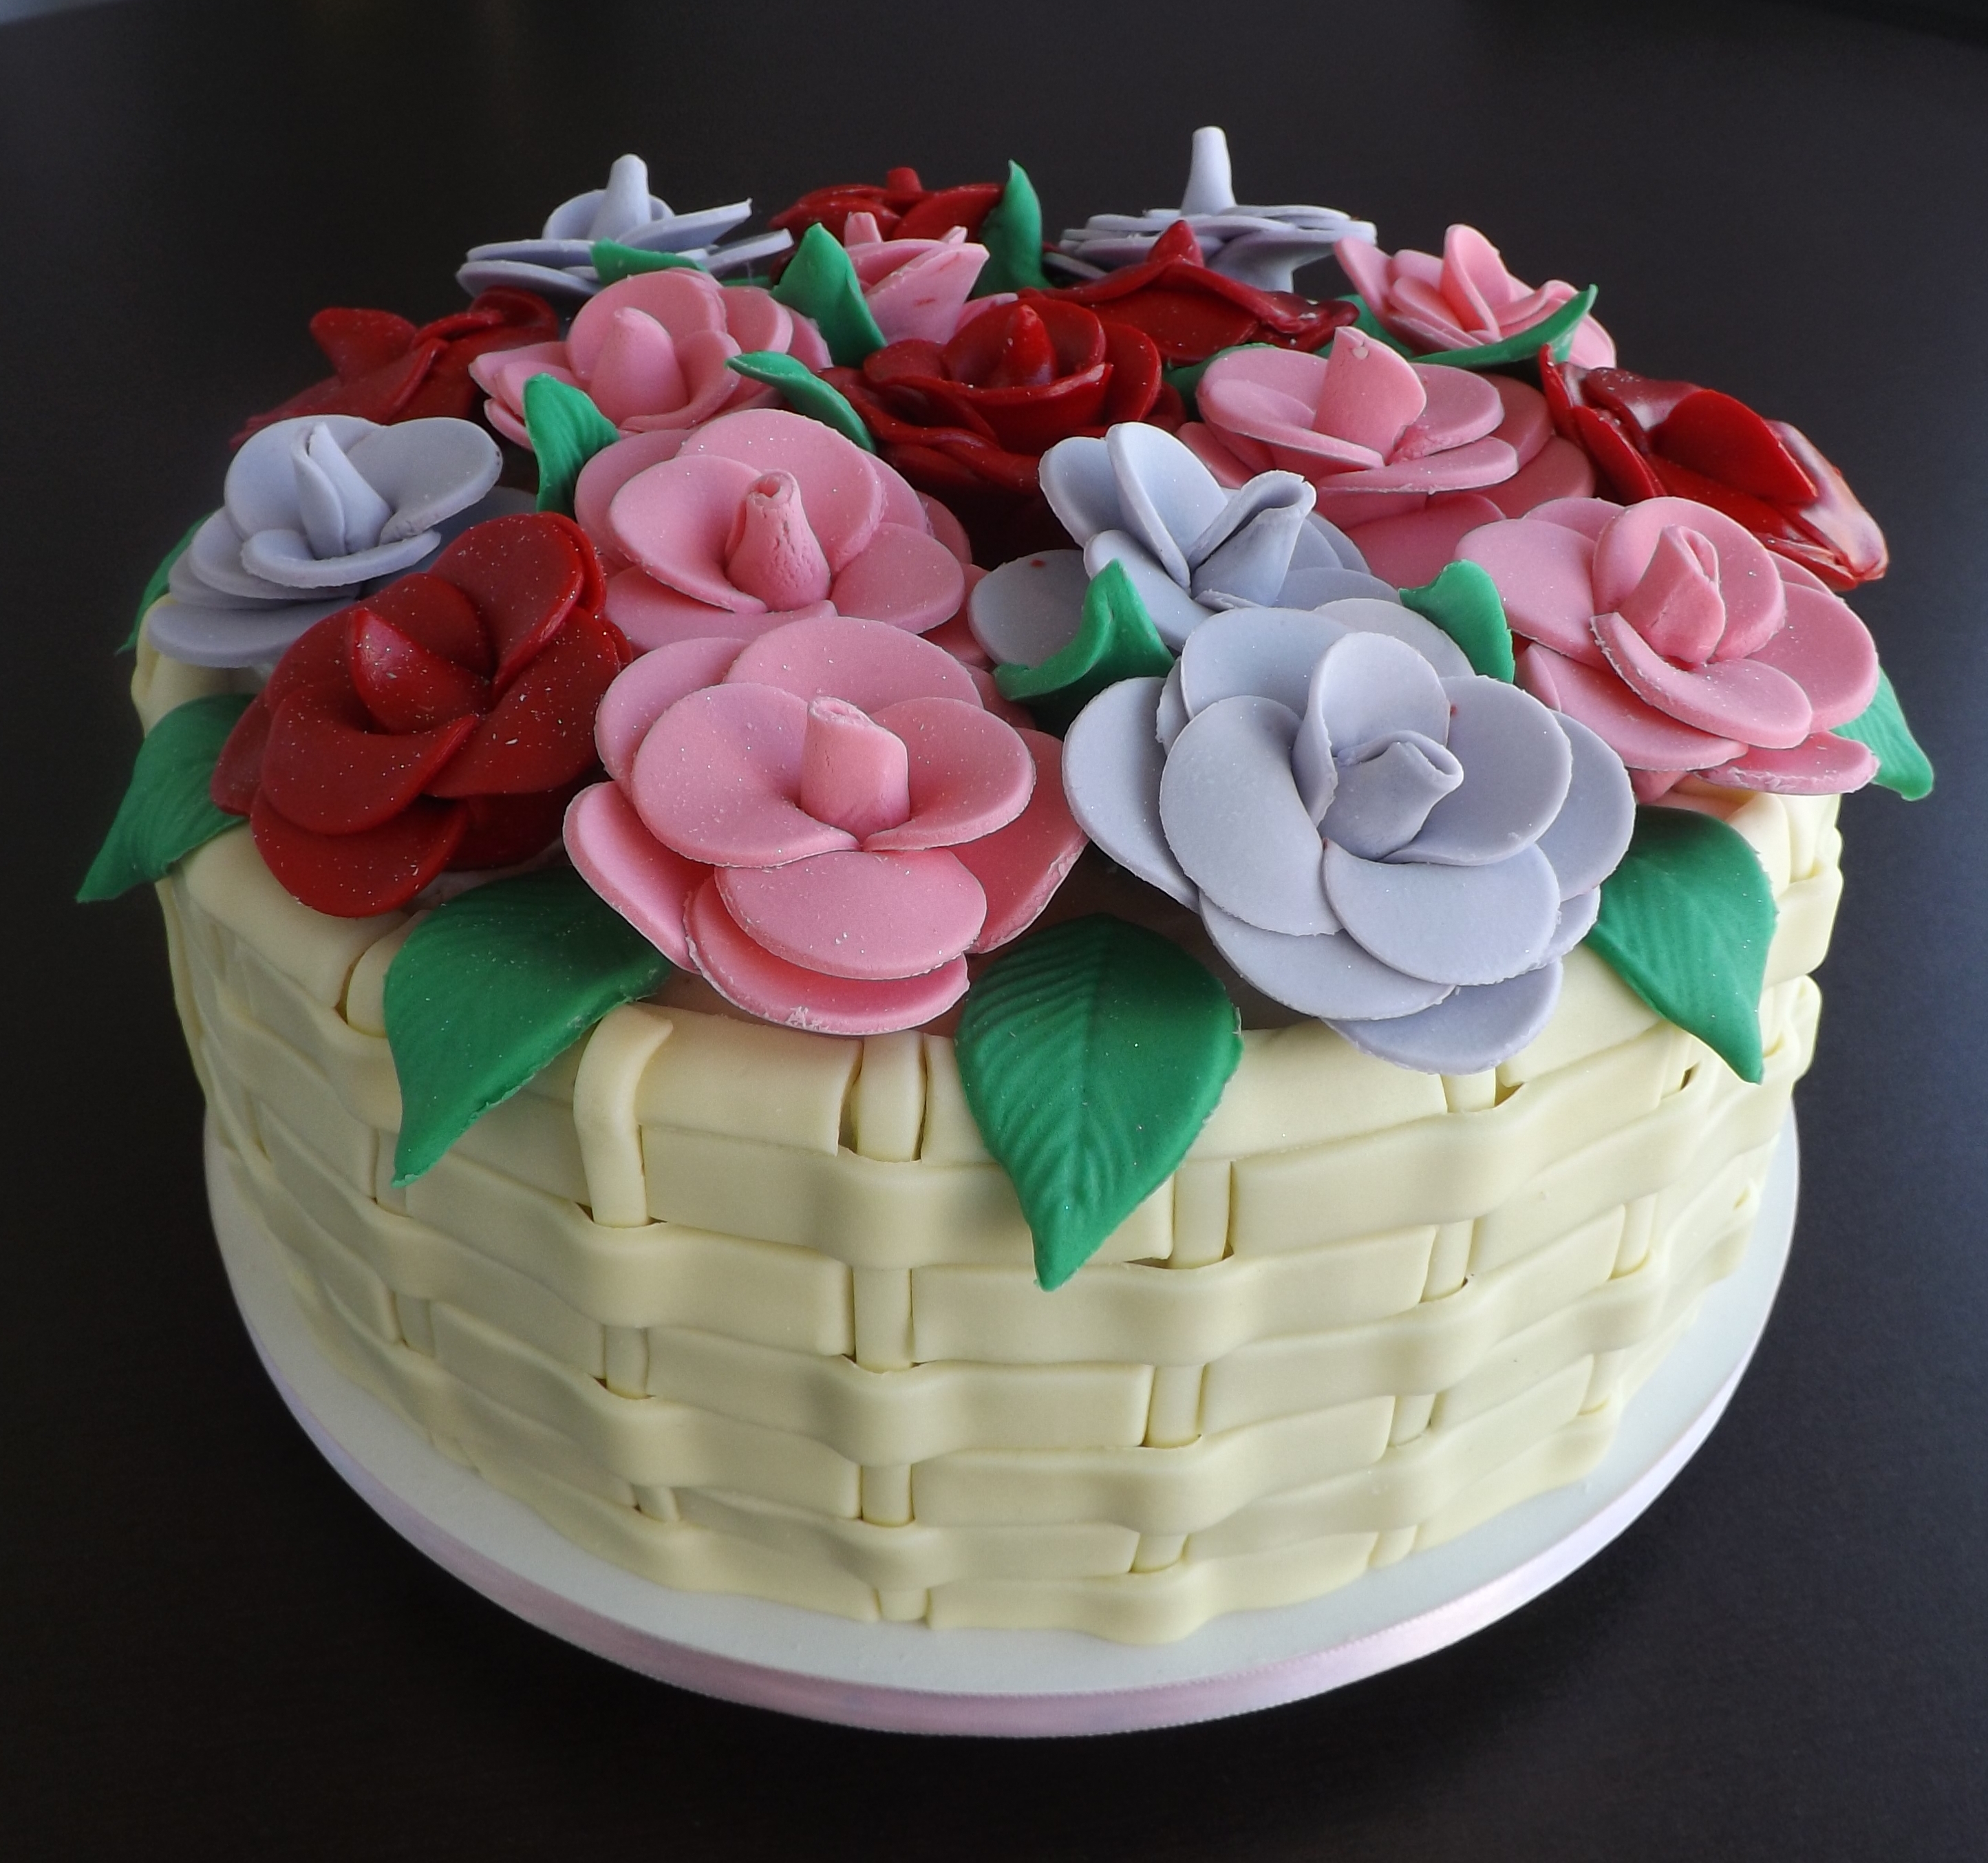 Bolo de aniversário feminino simples decorado com rosas de